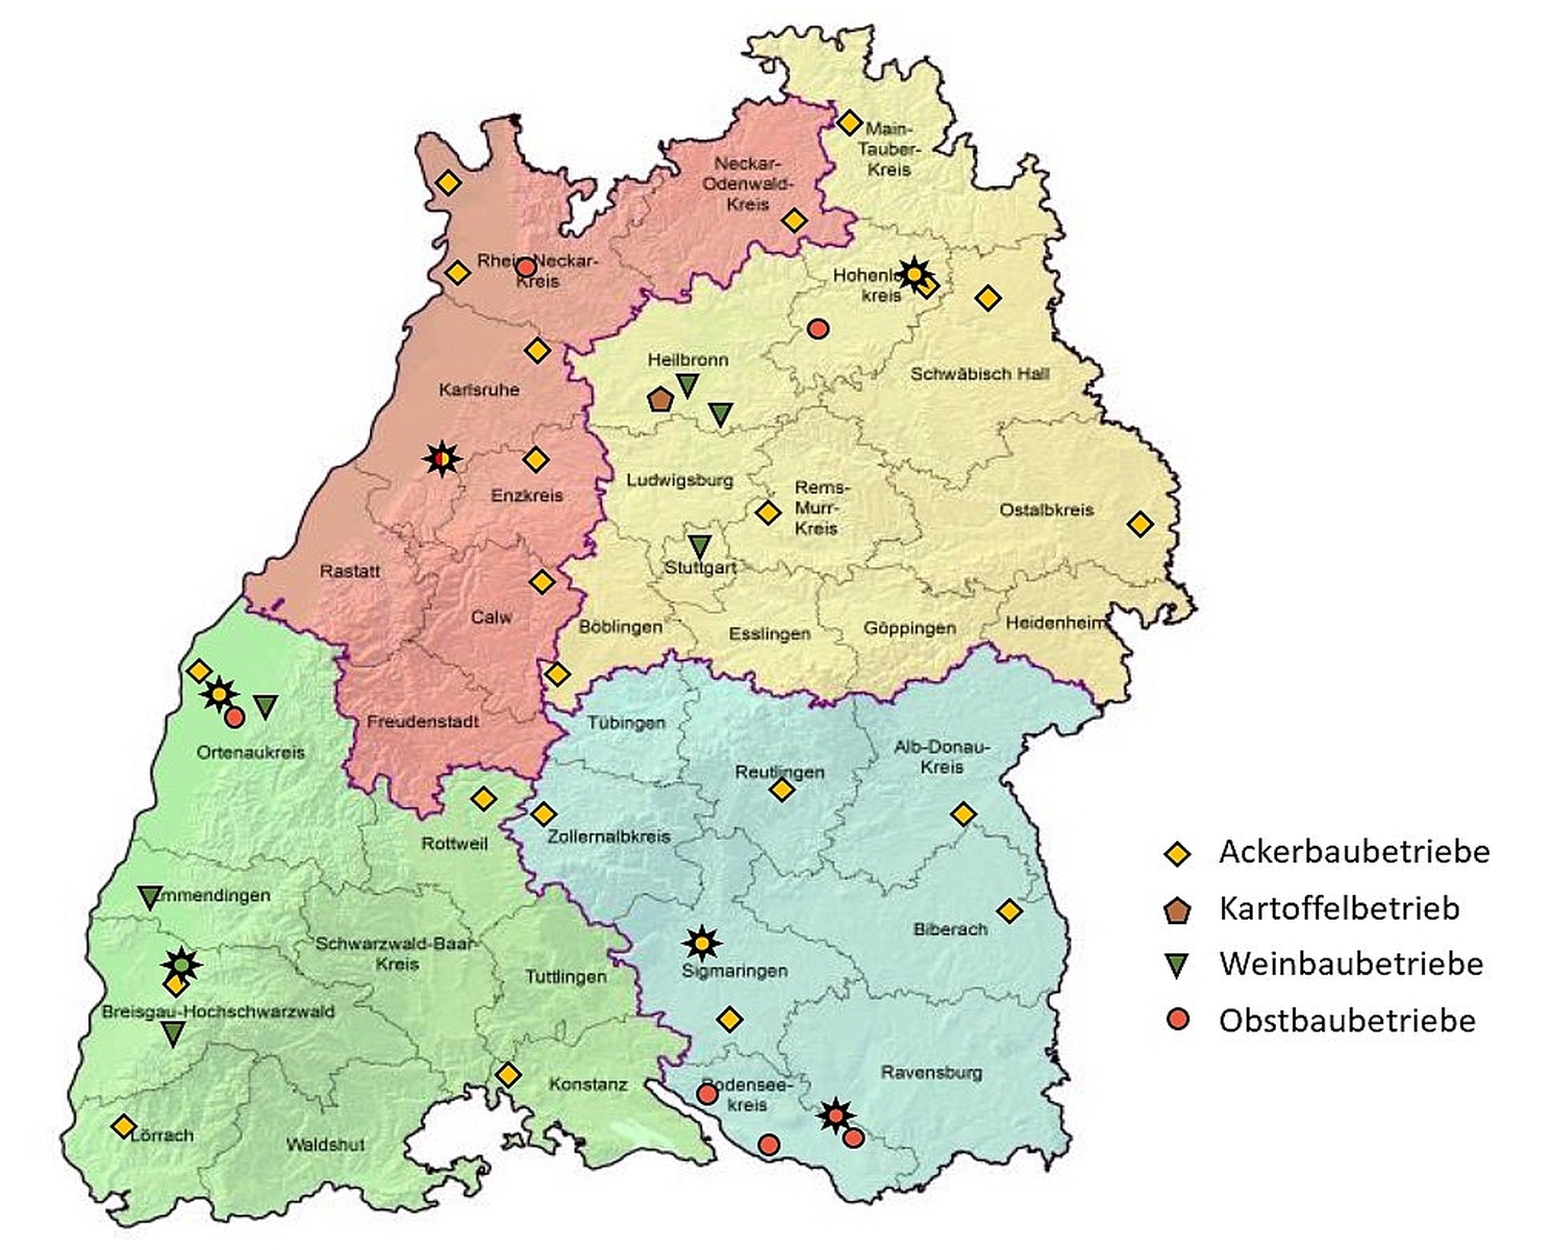 Karte von Baden-Württemberg mit den teilnehmenden Betrieben